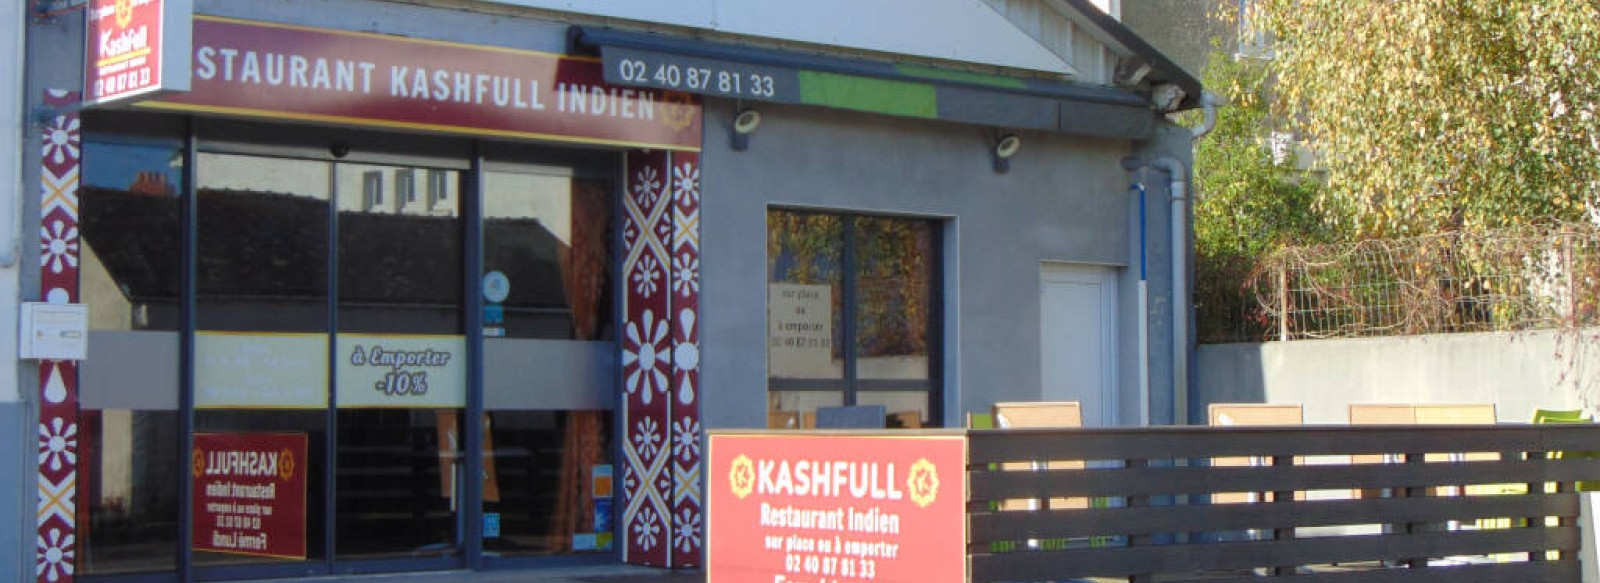 RESTAURANT INDIEN KASHFULL